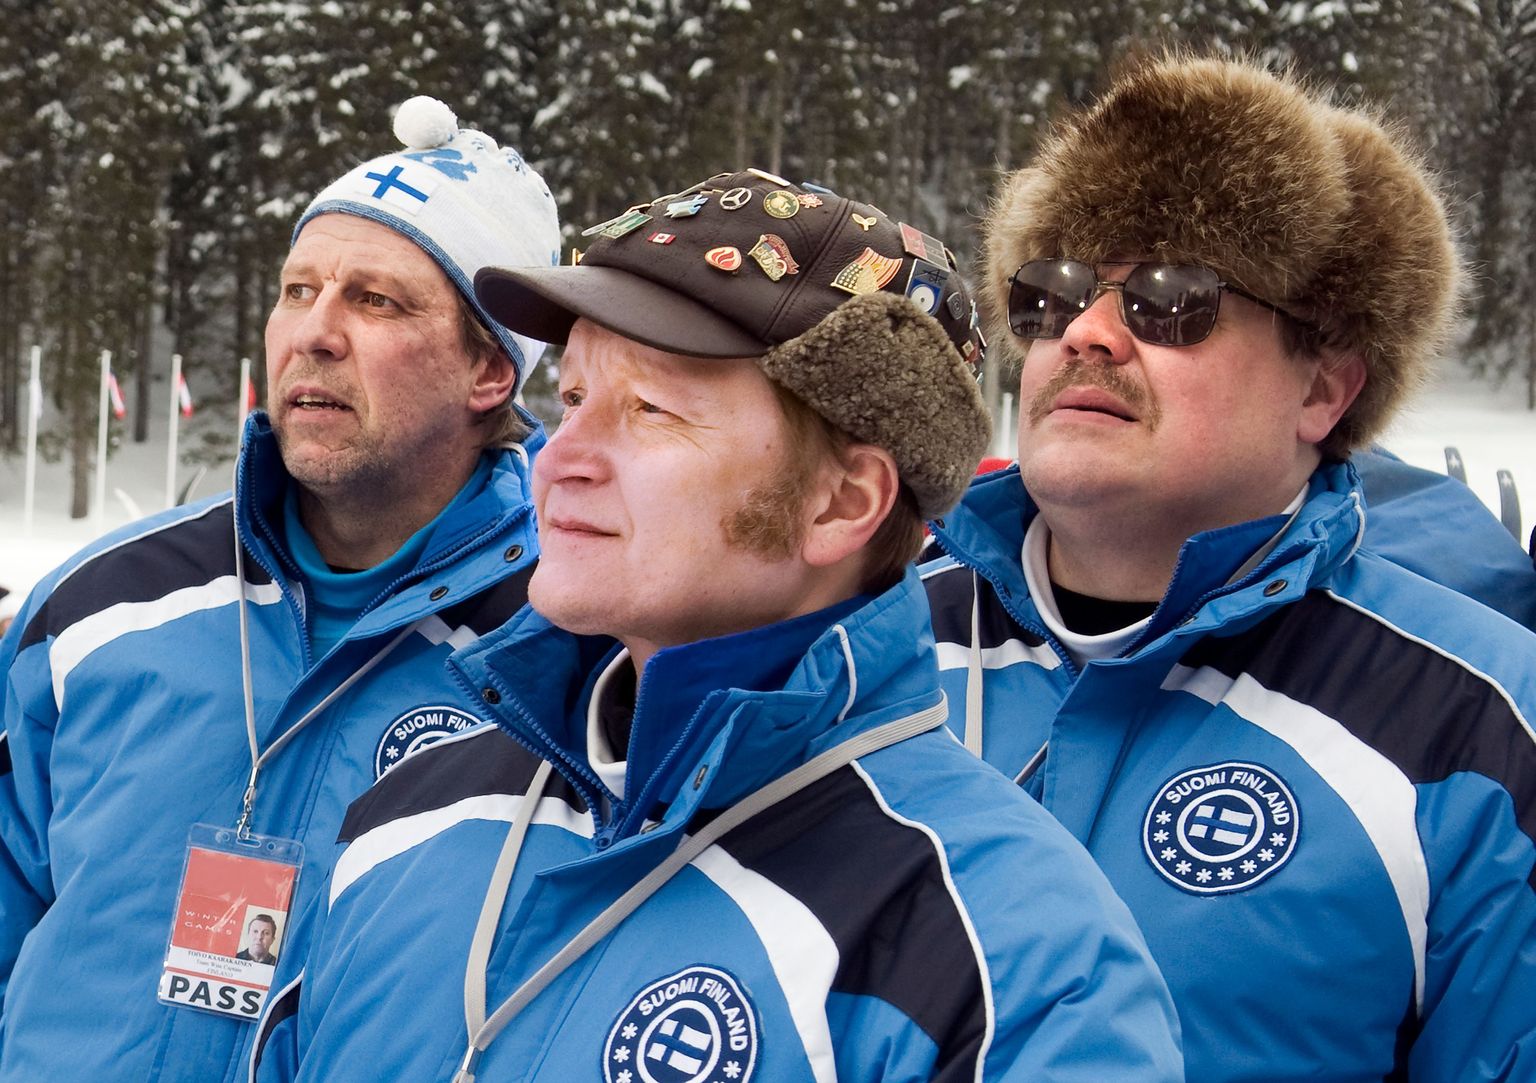 Soome võitmatu murdmaakoondise niiditõmbajad: veredoonor Toivo (Martti Suosalo, vasakult), treener Ismo (Janne Reinikainen) ja juht Kataja (Hannu-Pekka Björkman).